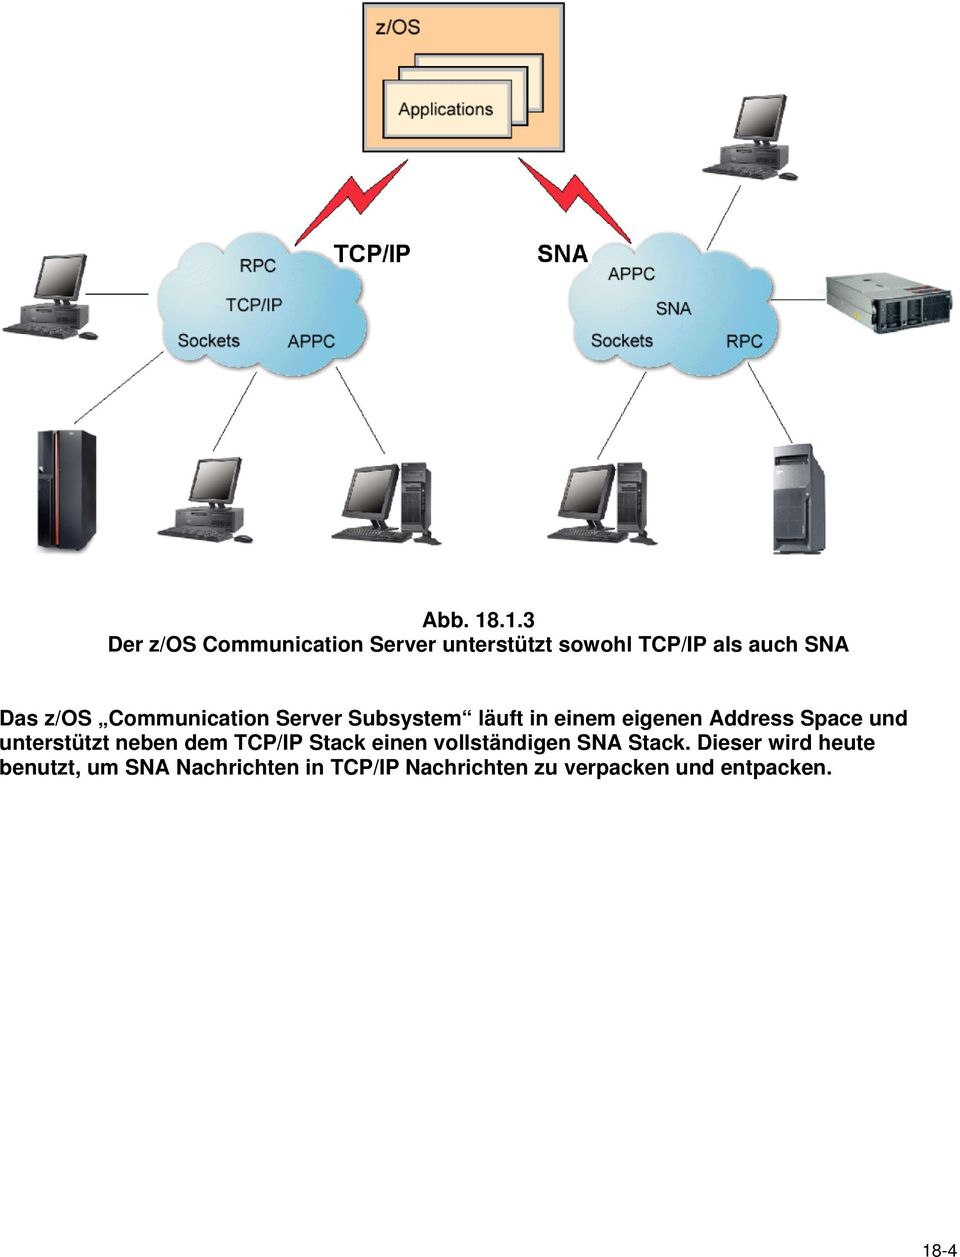 z/os Communication Server Subsystem läuft in einem eigenen Address Space und